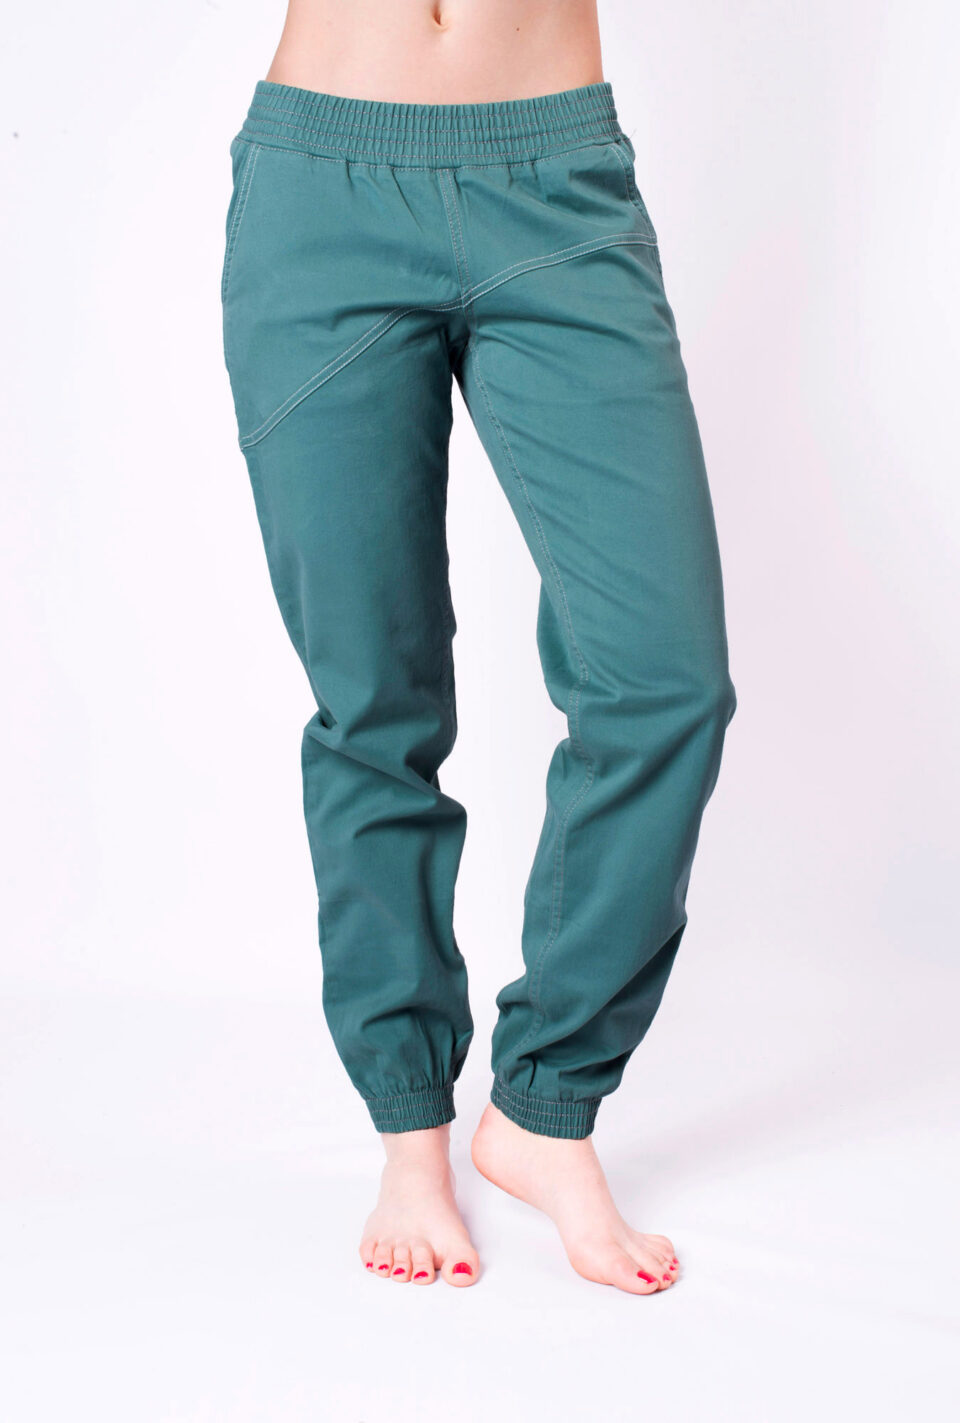 Cotton Crosscut pants - mint